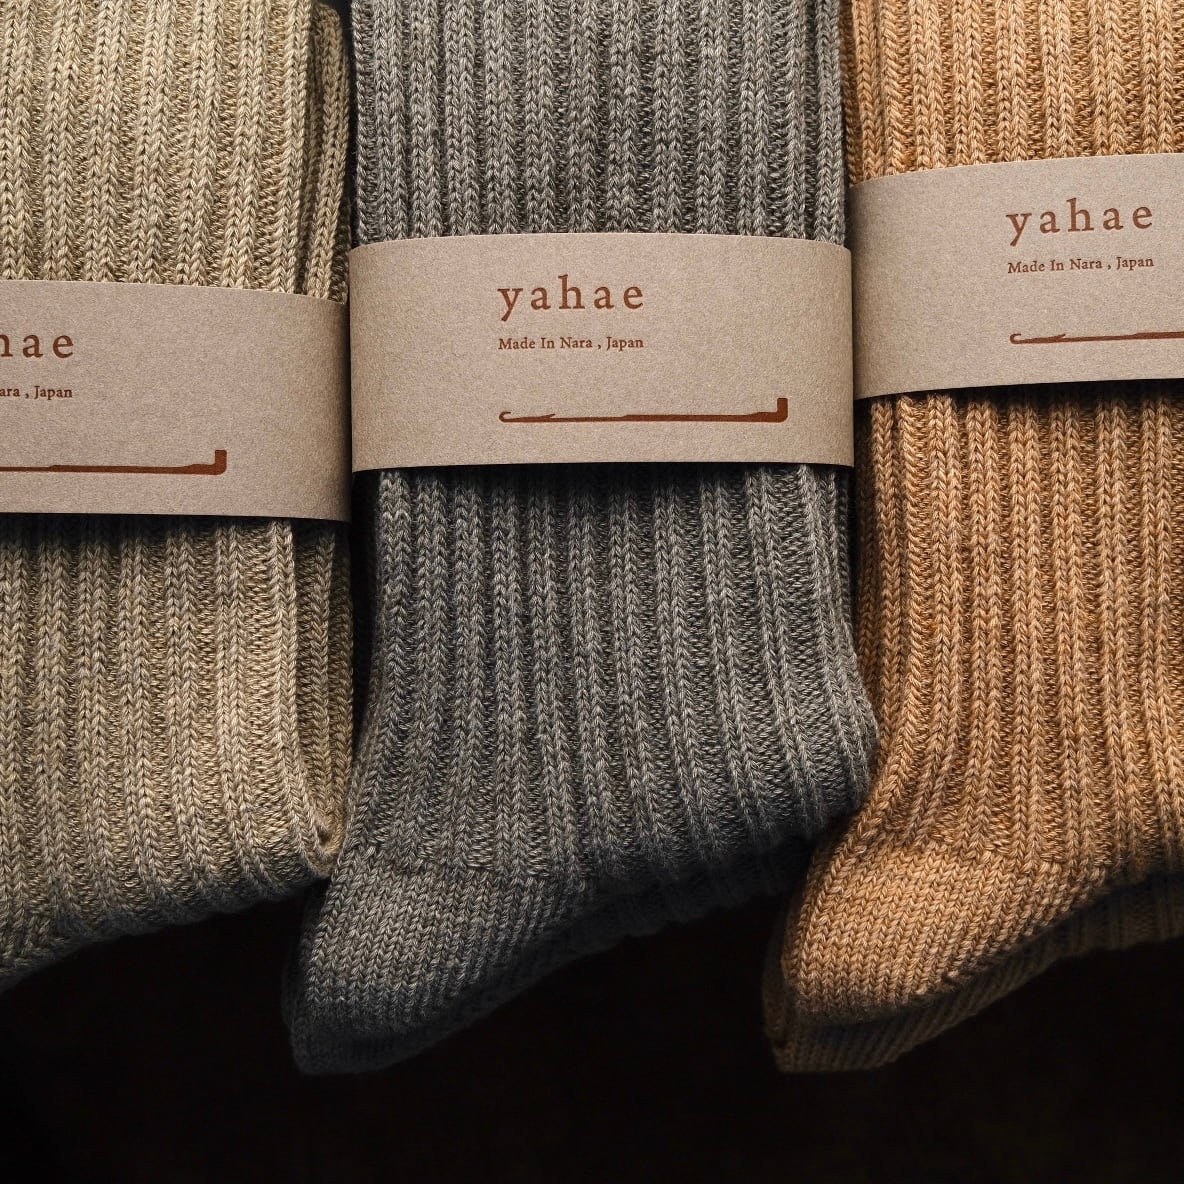 yahae (ヤハエ)   “サリーフォックス・オーガニックカラードコットンとヤクの混紡リブソックス”  ( Sally Fox )  靴下の本場・奈良広陵町製